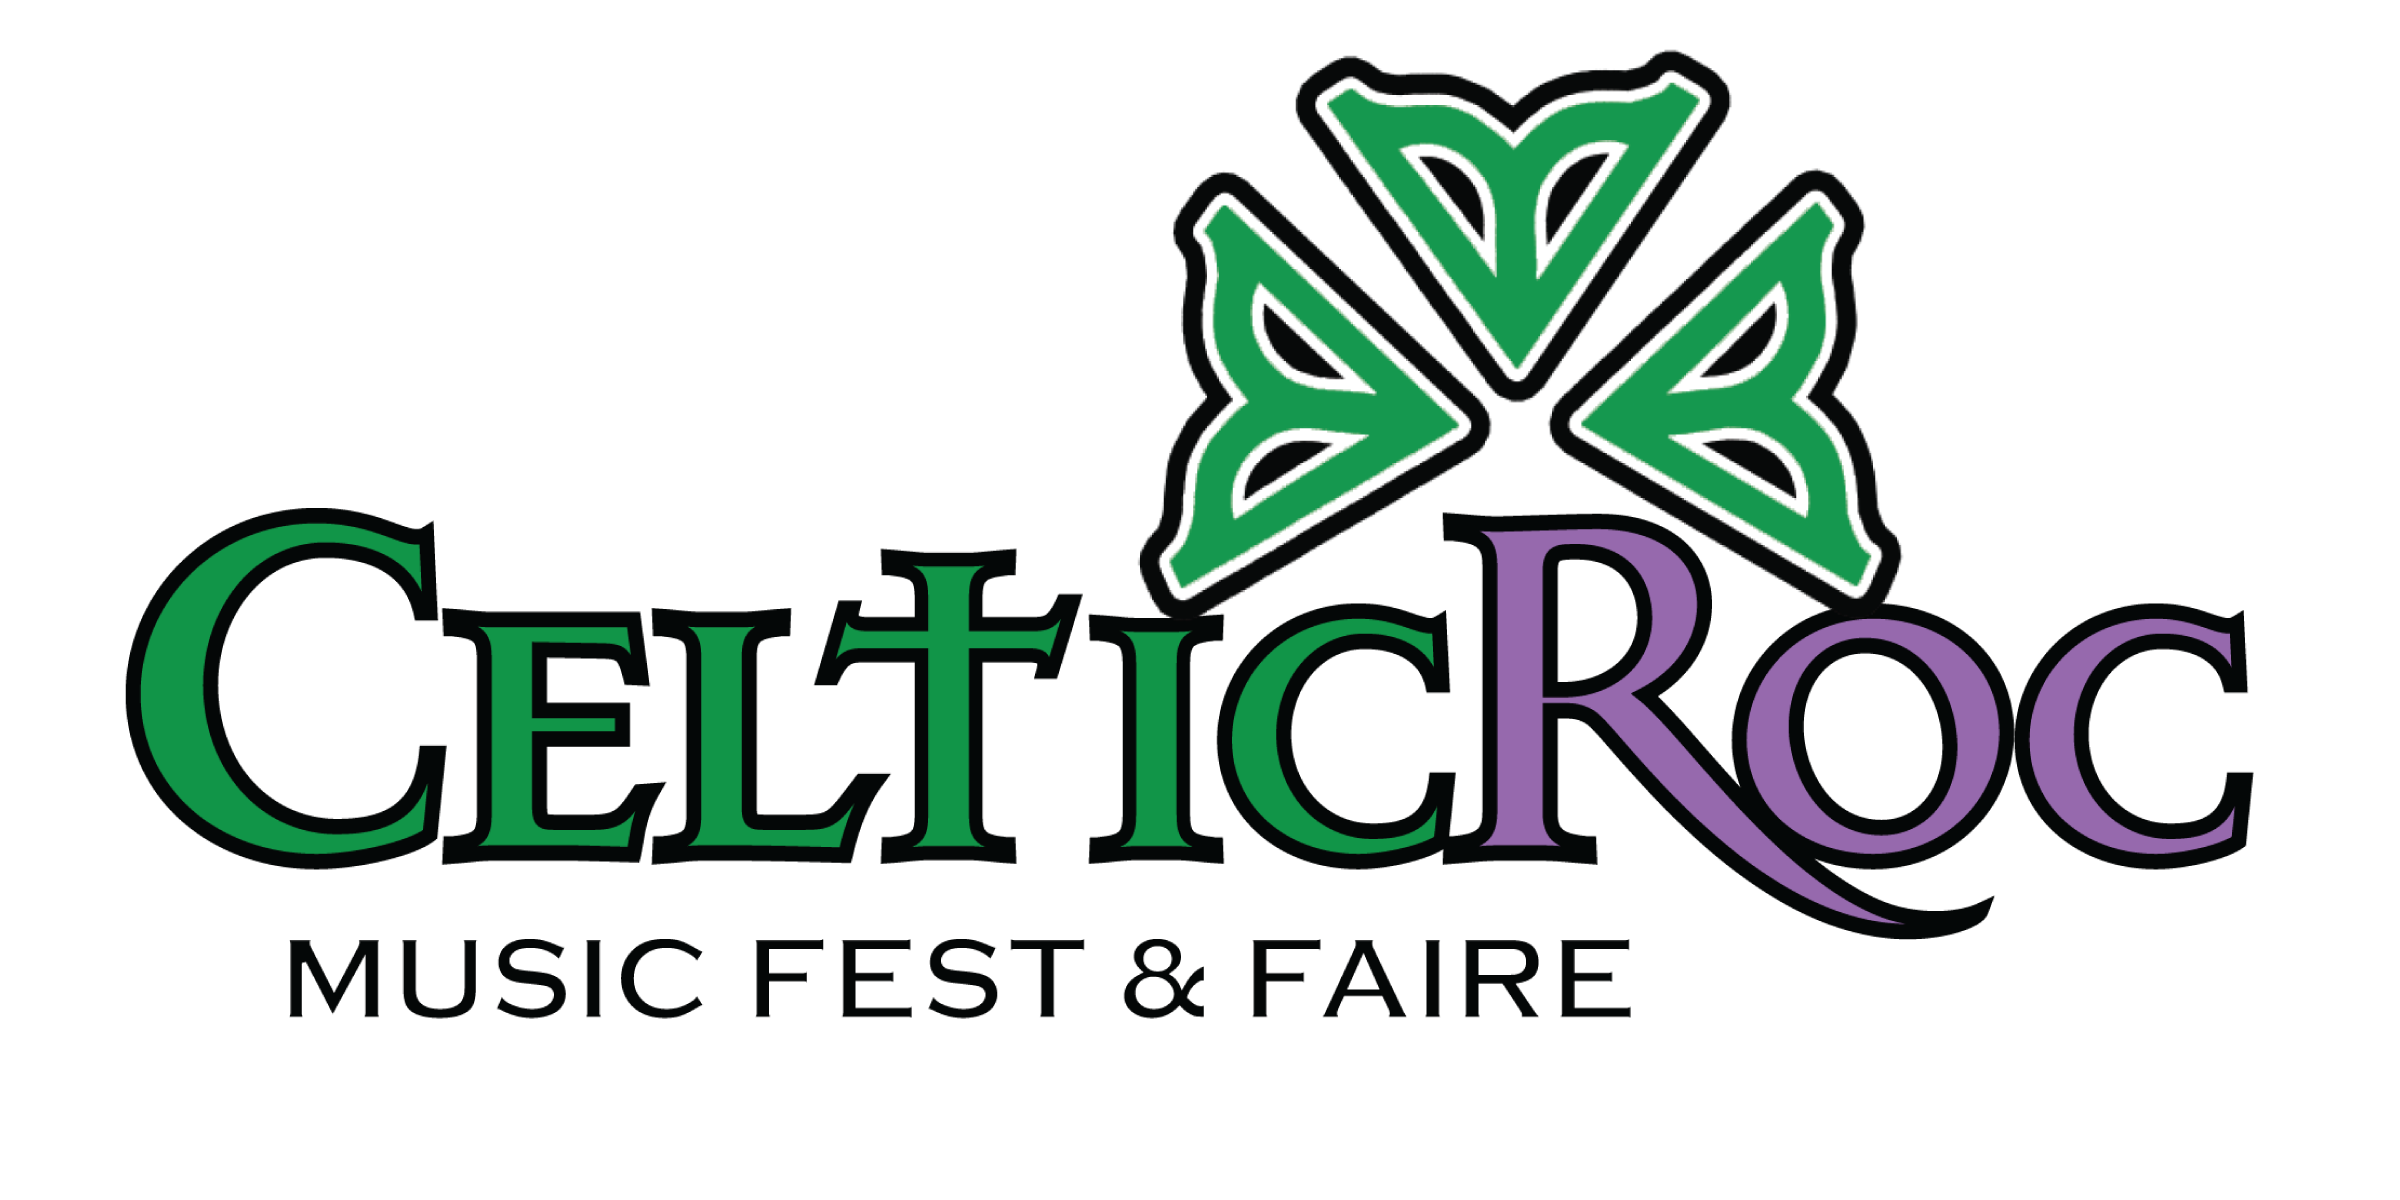 Celtic Roc music festival, Saturday, July 27, 2019